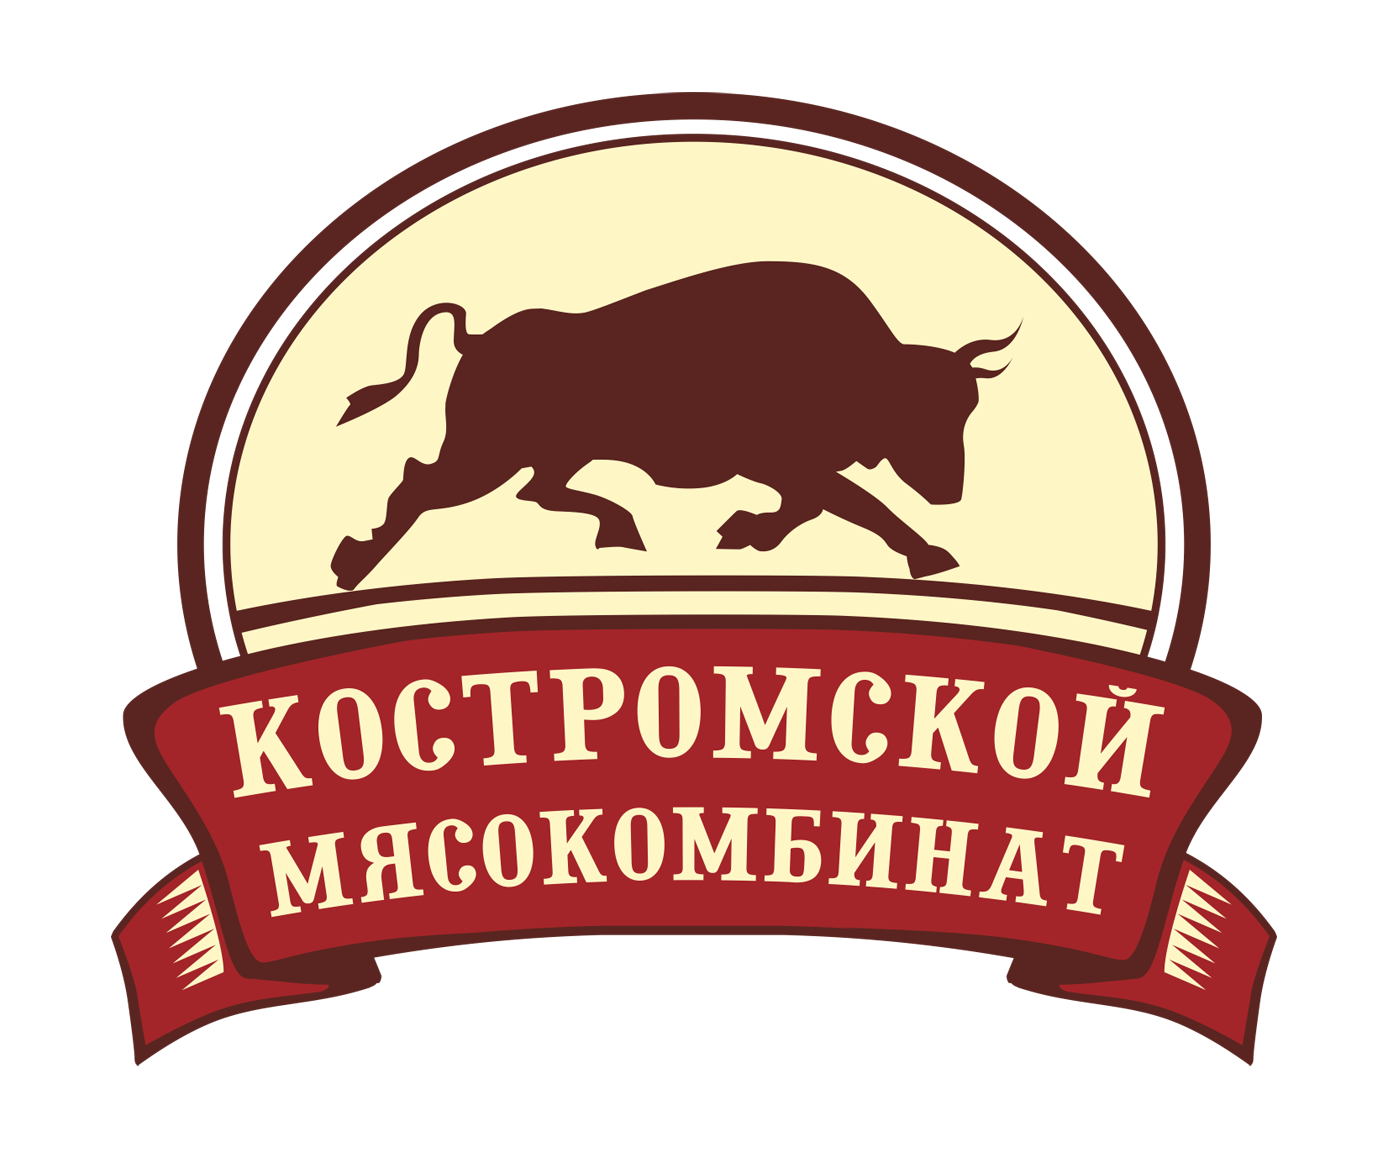 Вакансии крупного мясоперерабатывающего предприятия Костромской области ООО Костромской мясокомбинат